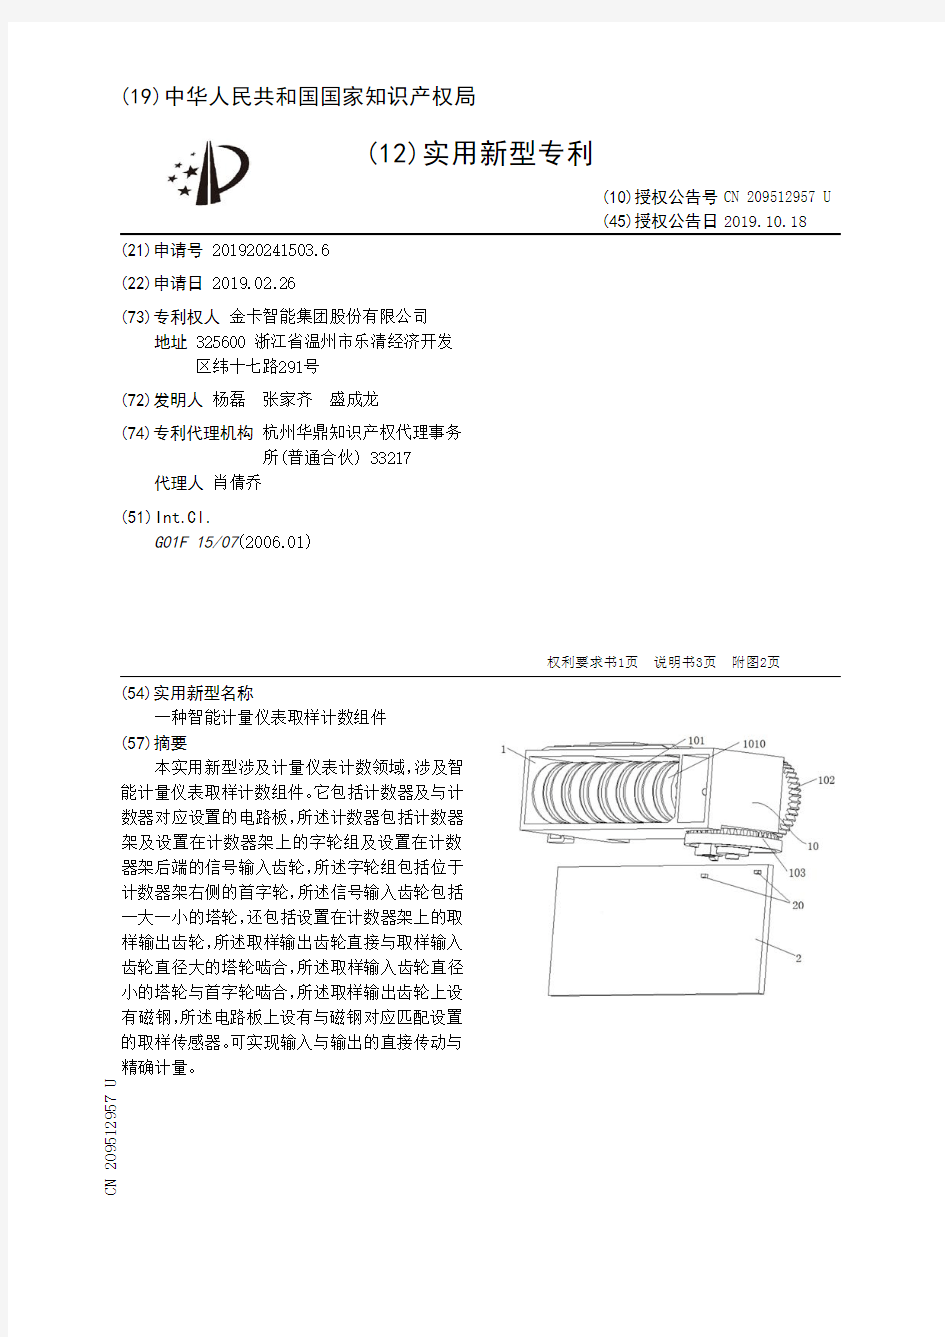 【CN209512957U】一种智能计量仪表取样计数组件【专利】